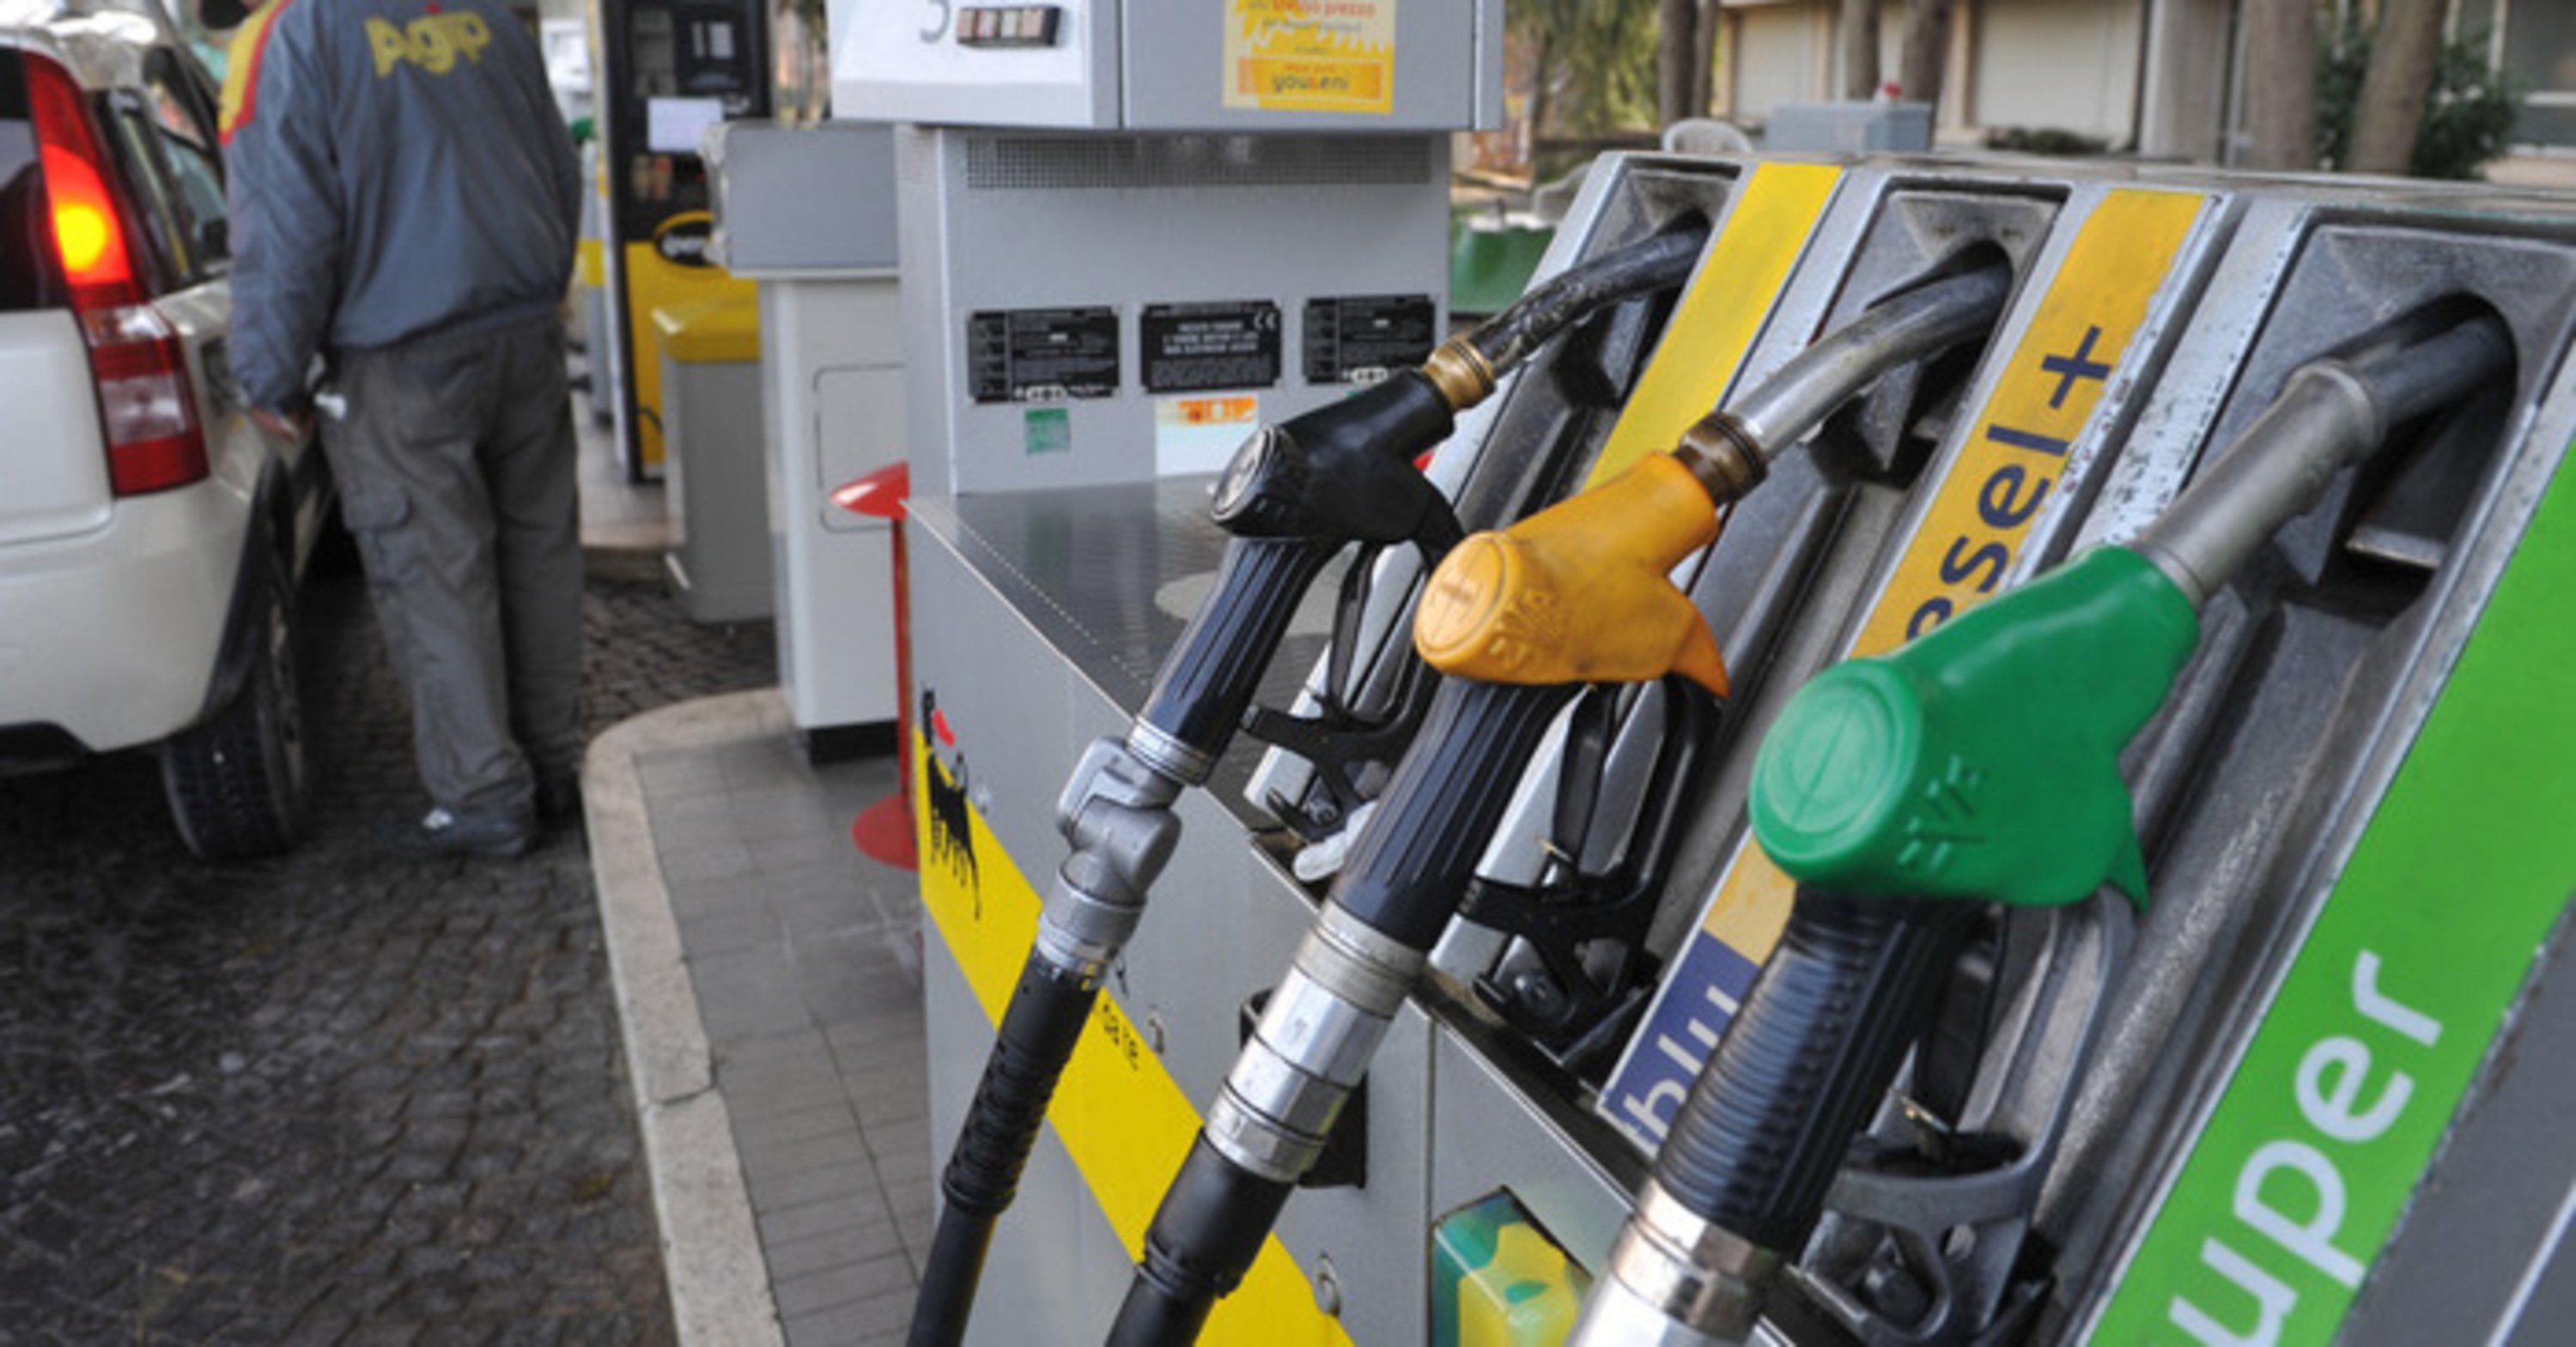 Carburanti, prezzi in lieve discesa 